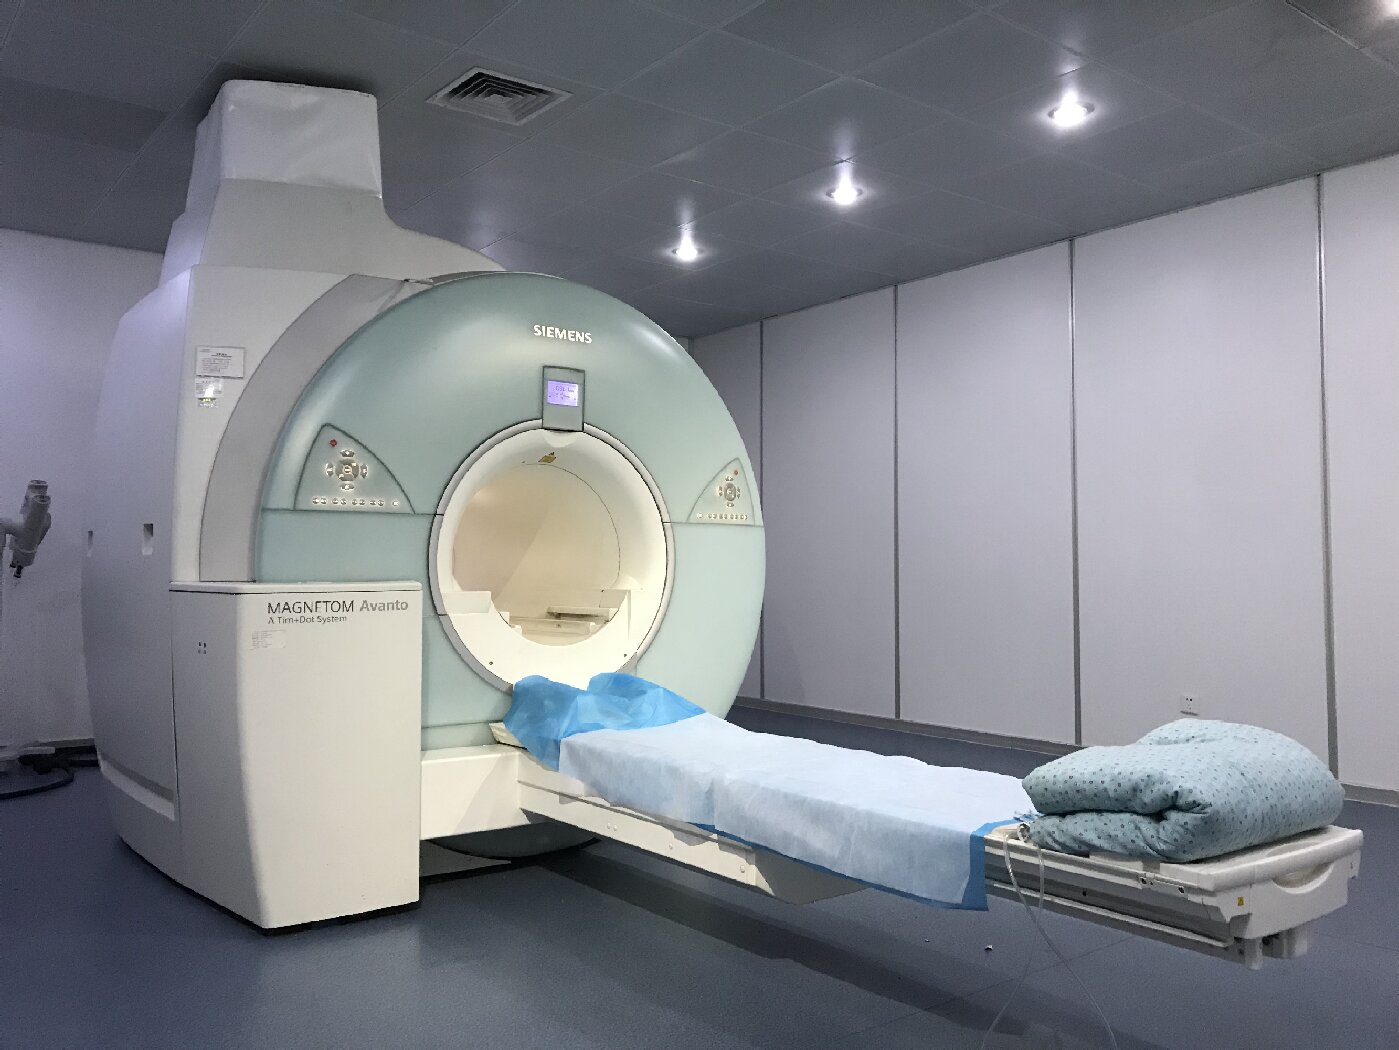 西门子1.5T磁共振成像设备(MRI).jpg